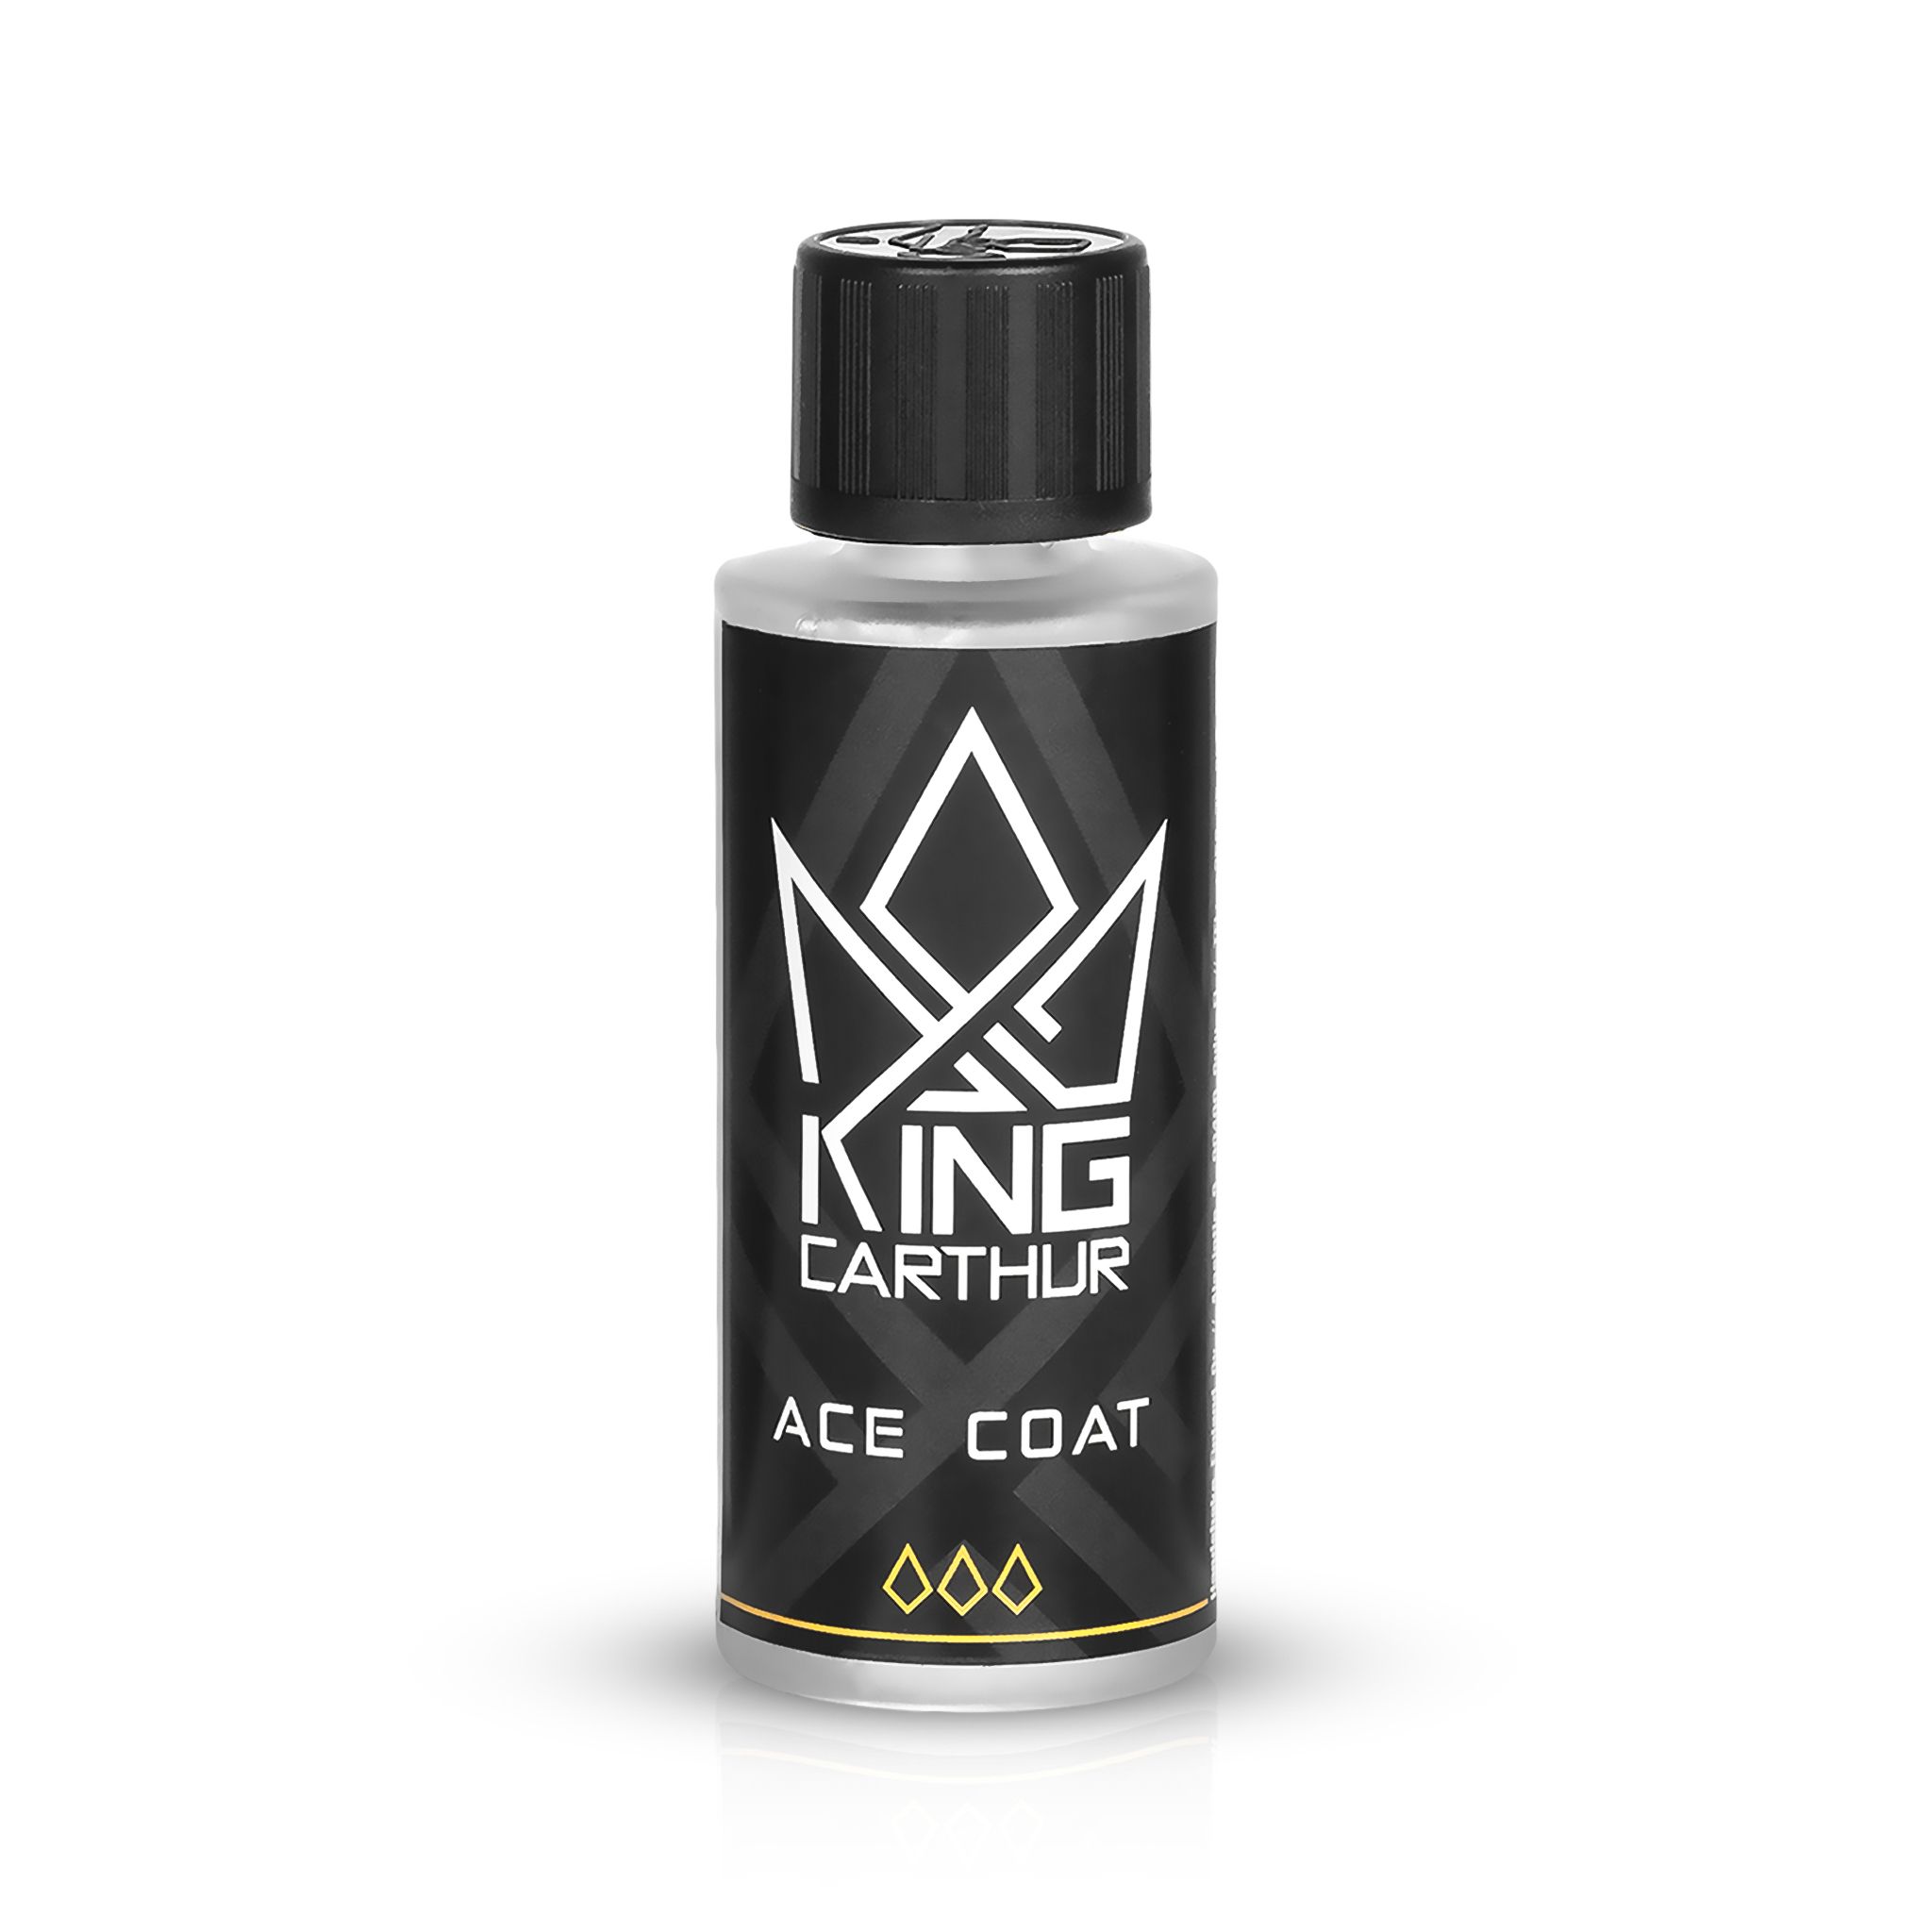 Lakkforsegling King Carthur ACE Coat, 30 ml, Kun lakkforsegling, 30 ml